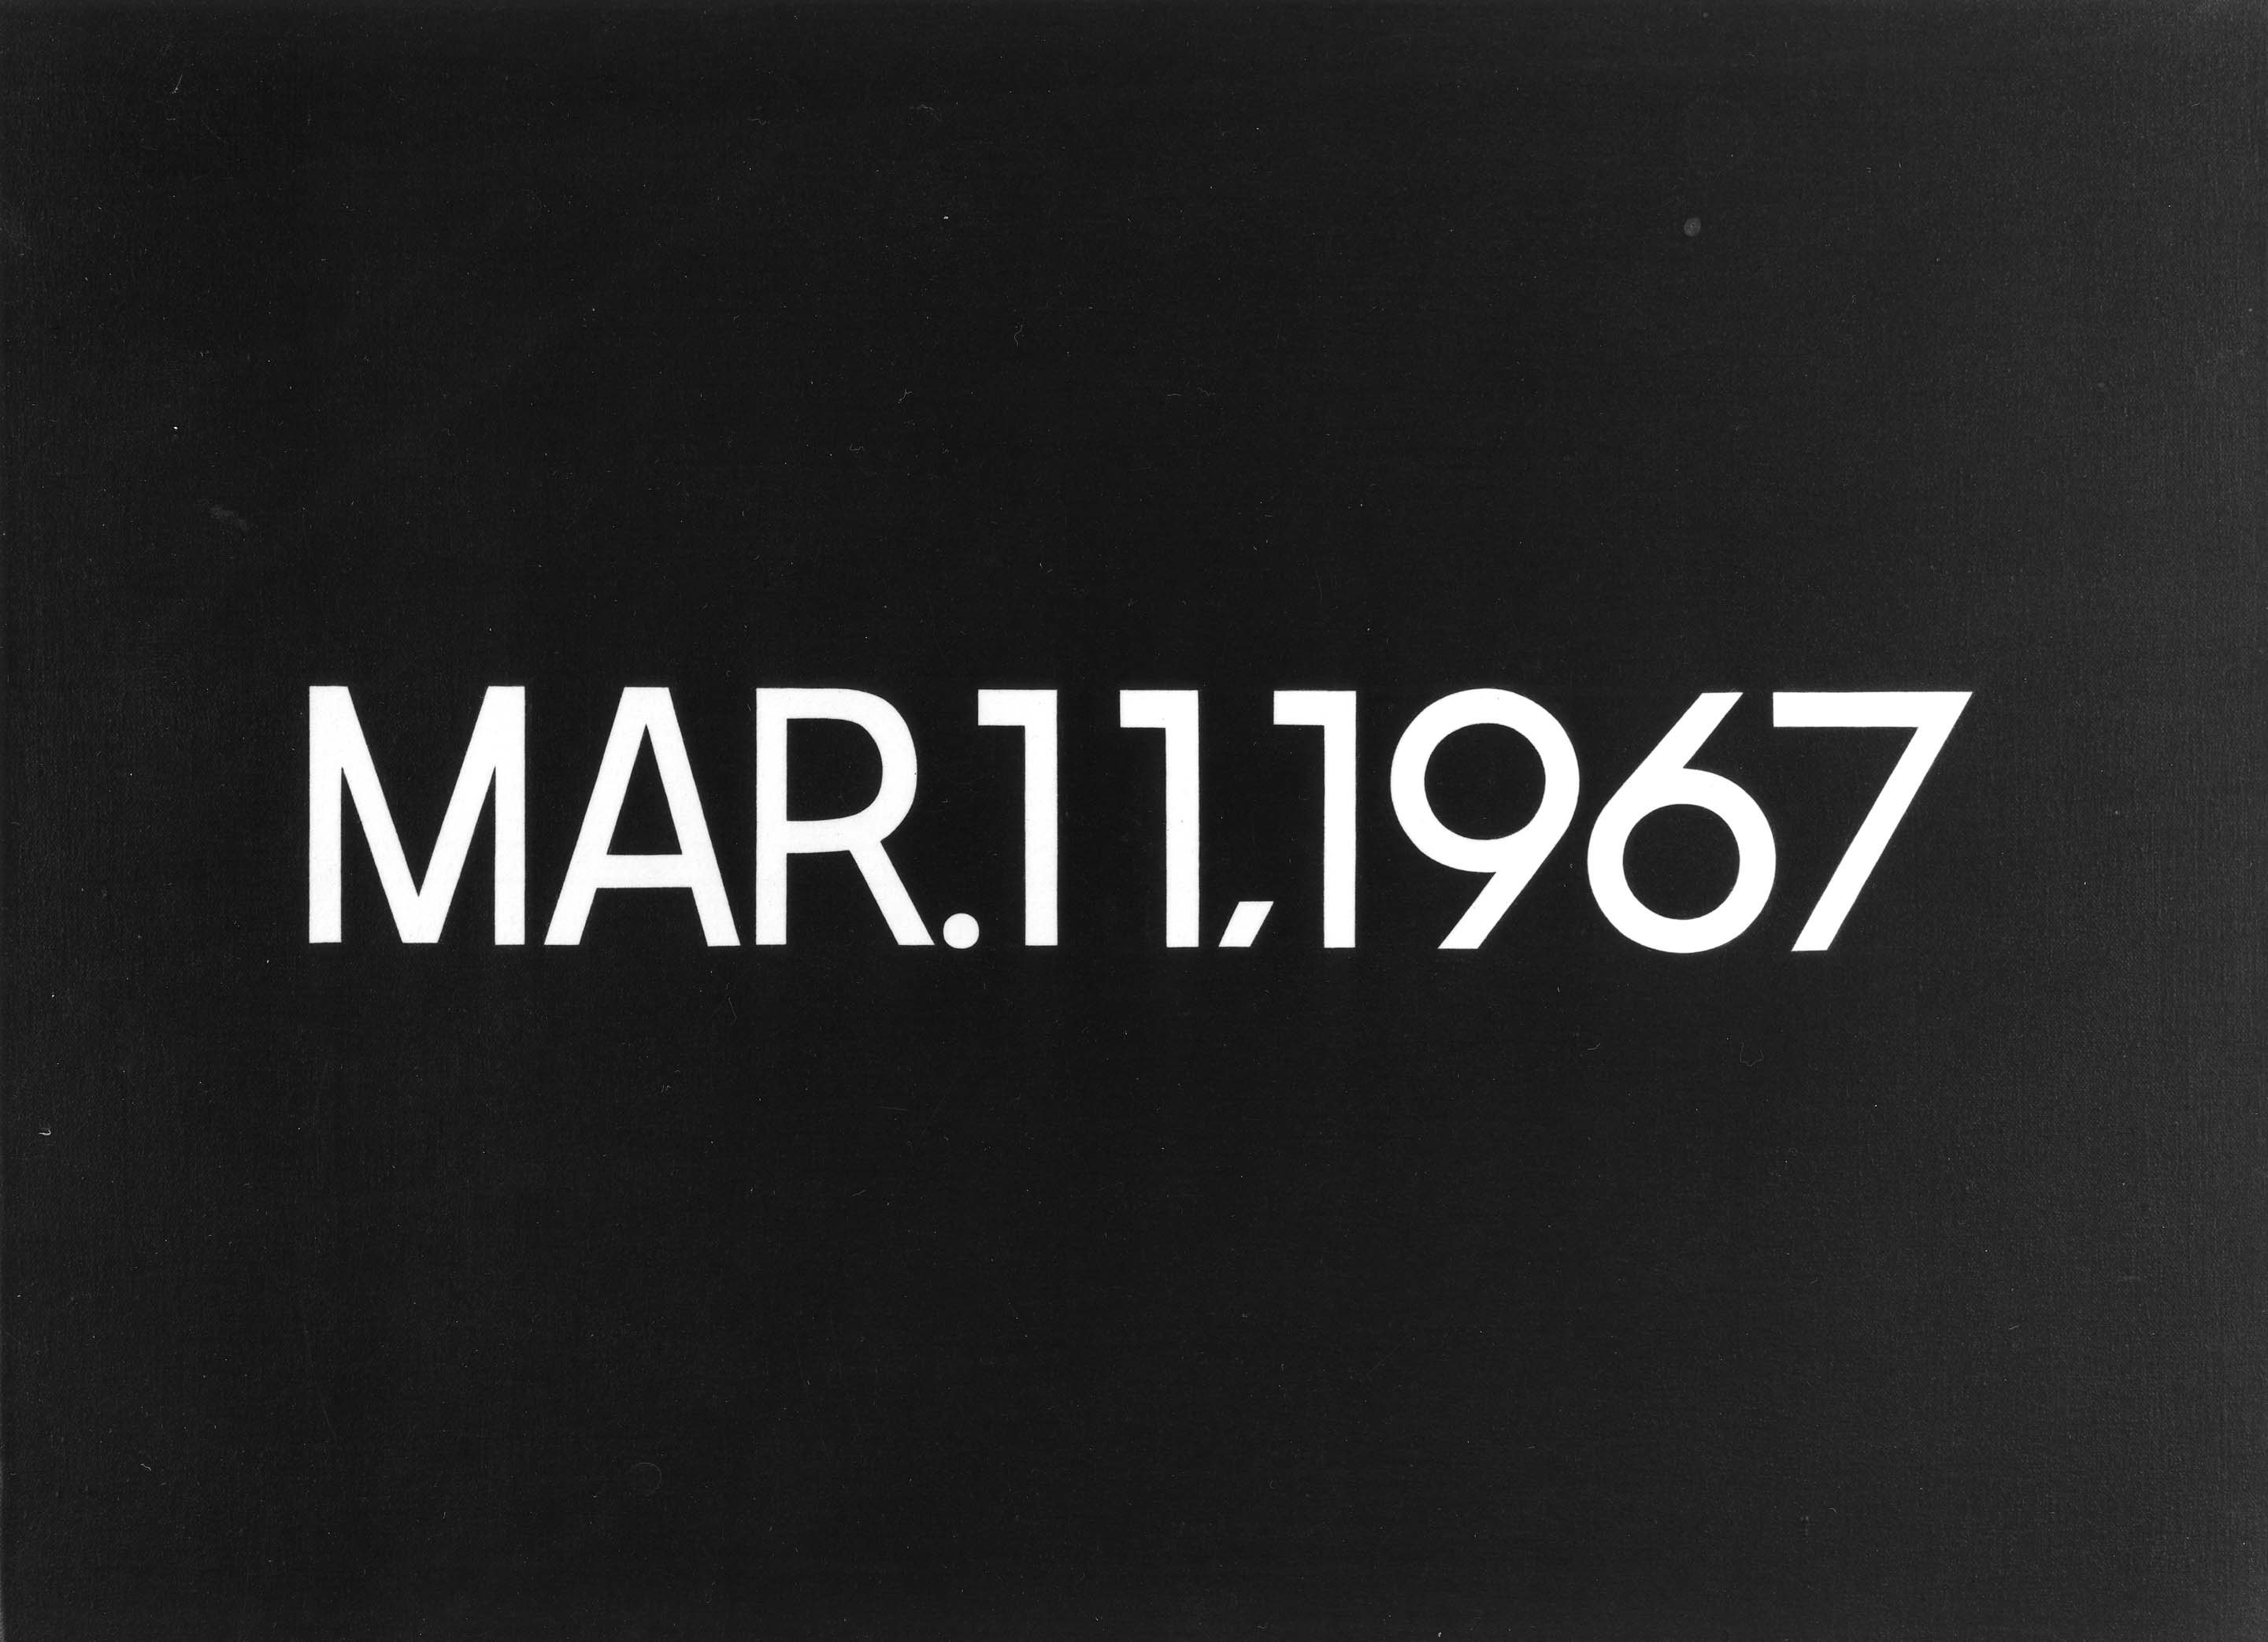 Mar.11,1967 by On Kawara